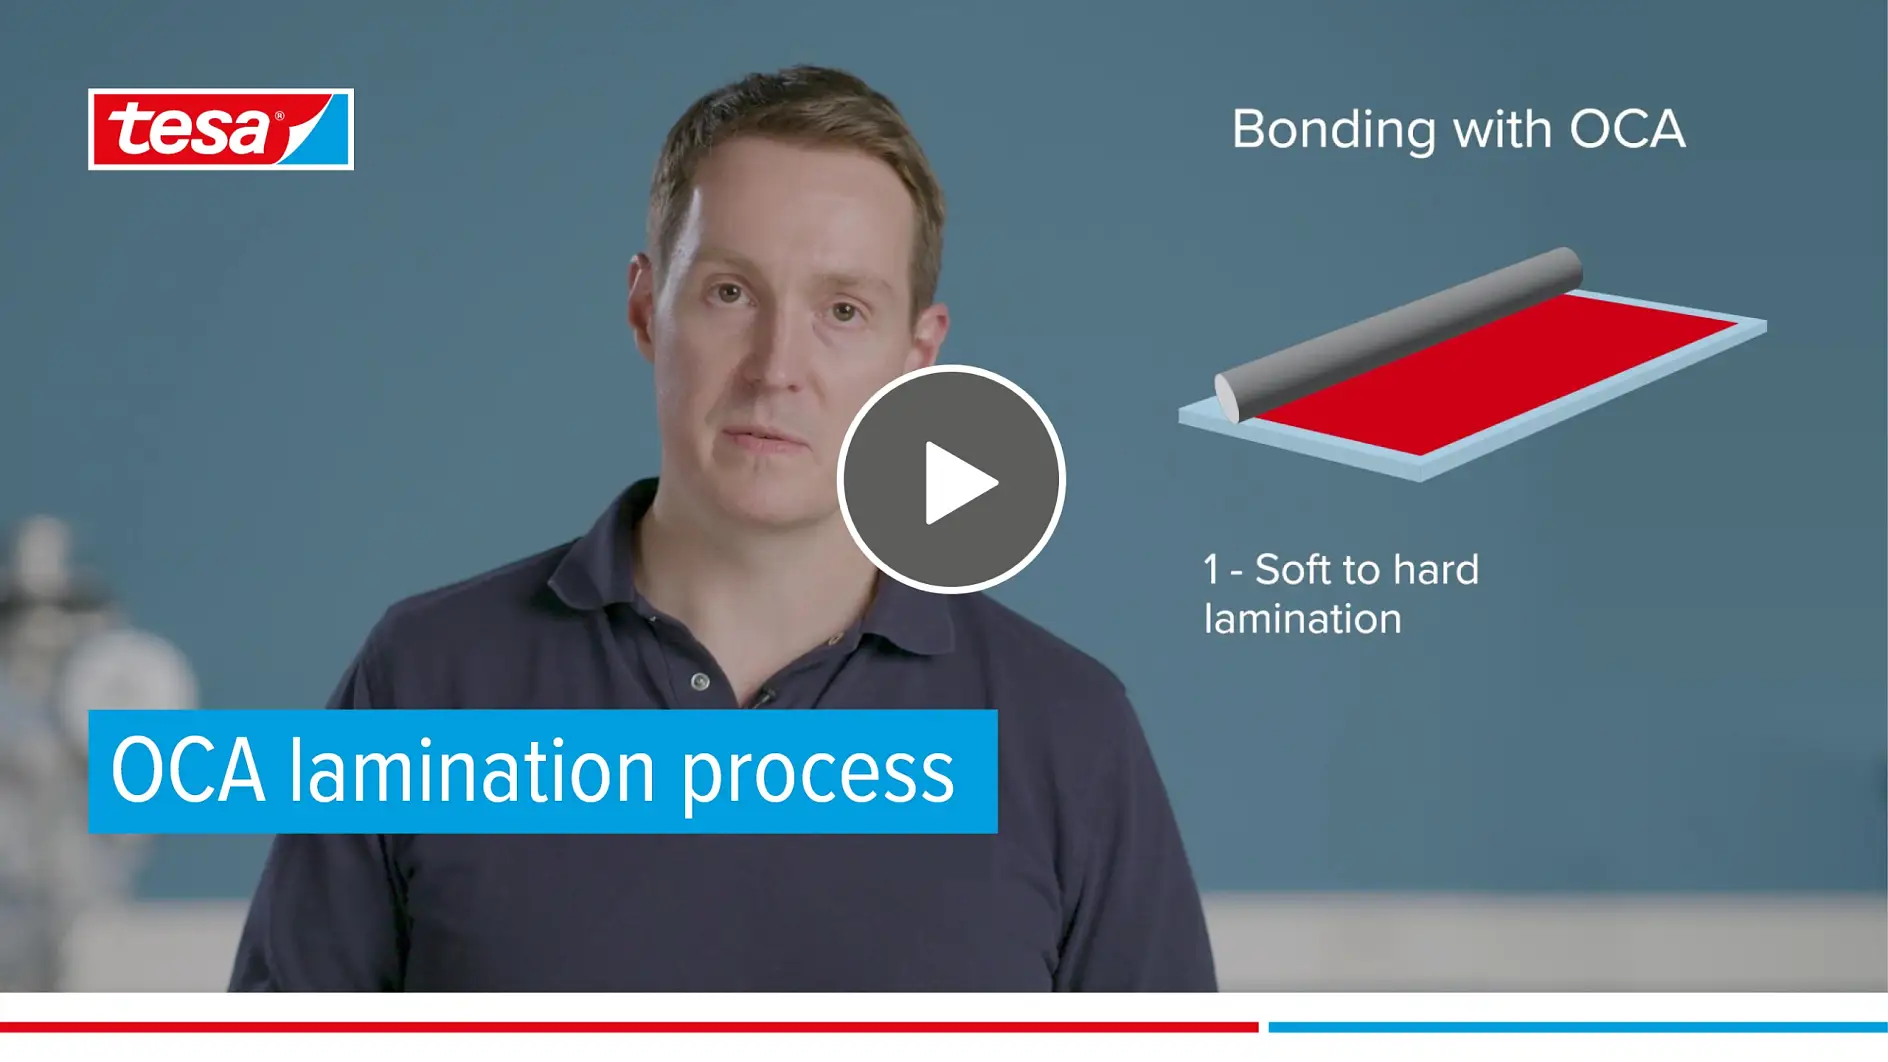 OCA lamination process: Liquid bonding vs. OCA lamination | tesa